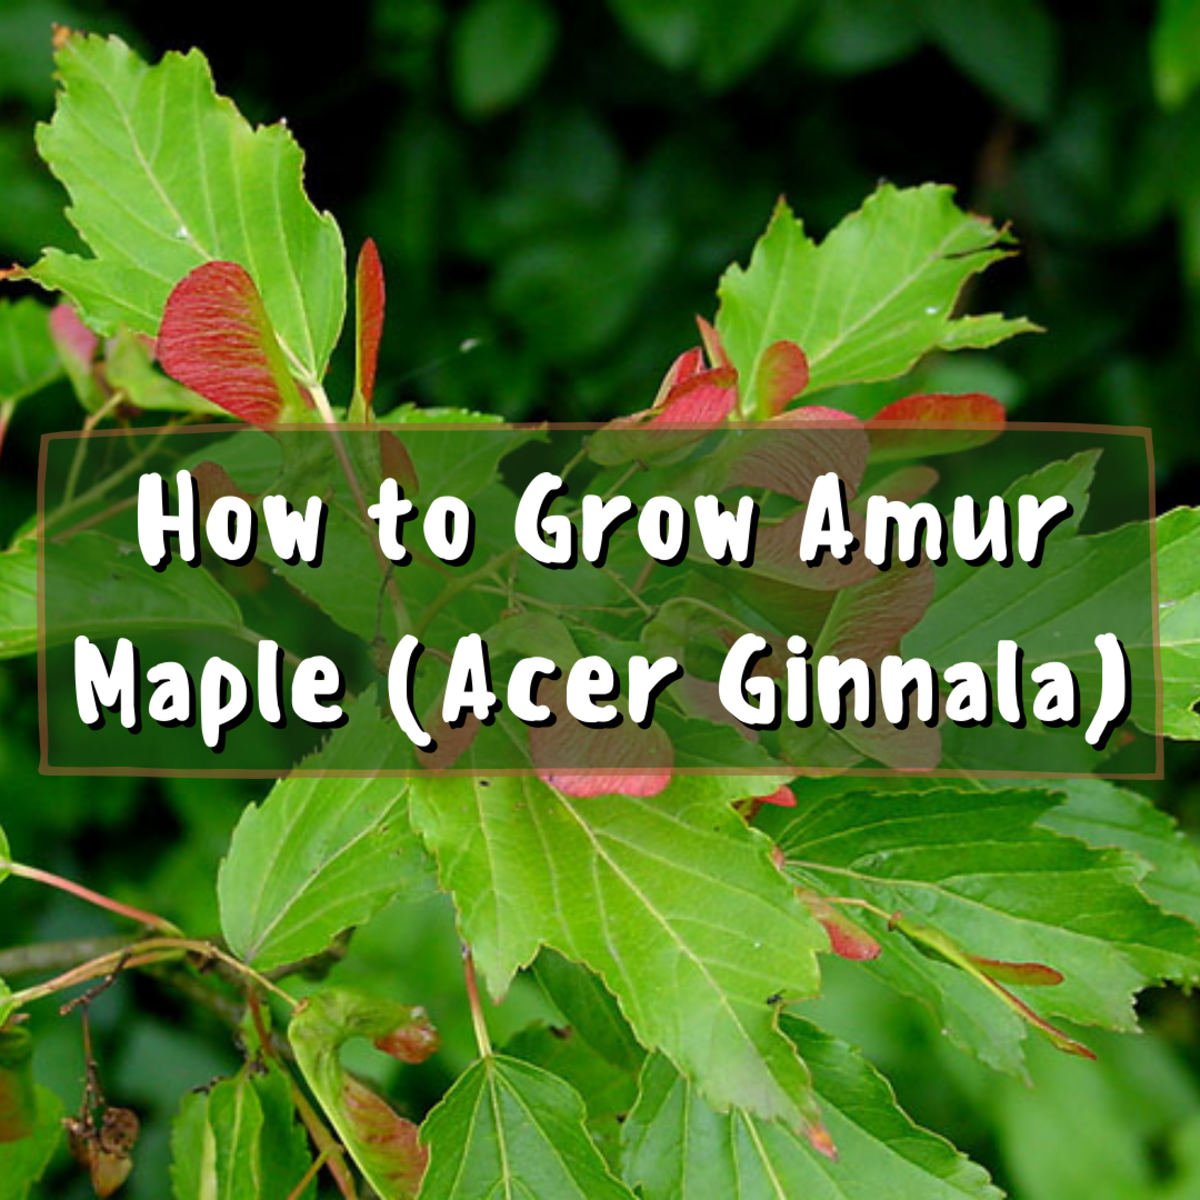 How to Grow Amur Maple (Acer Ginnala)